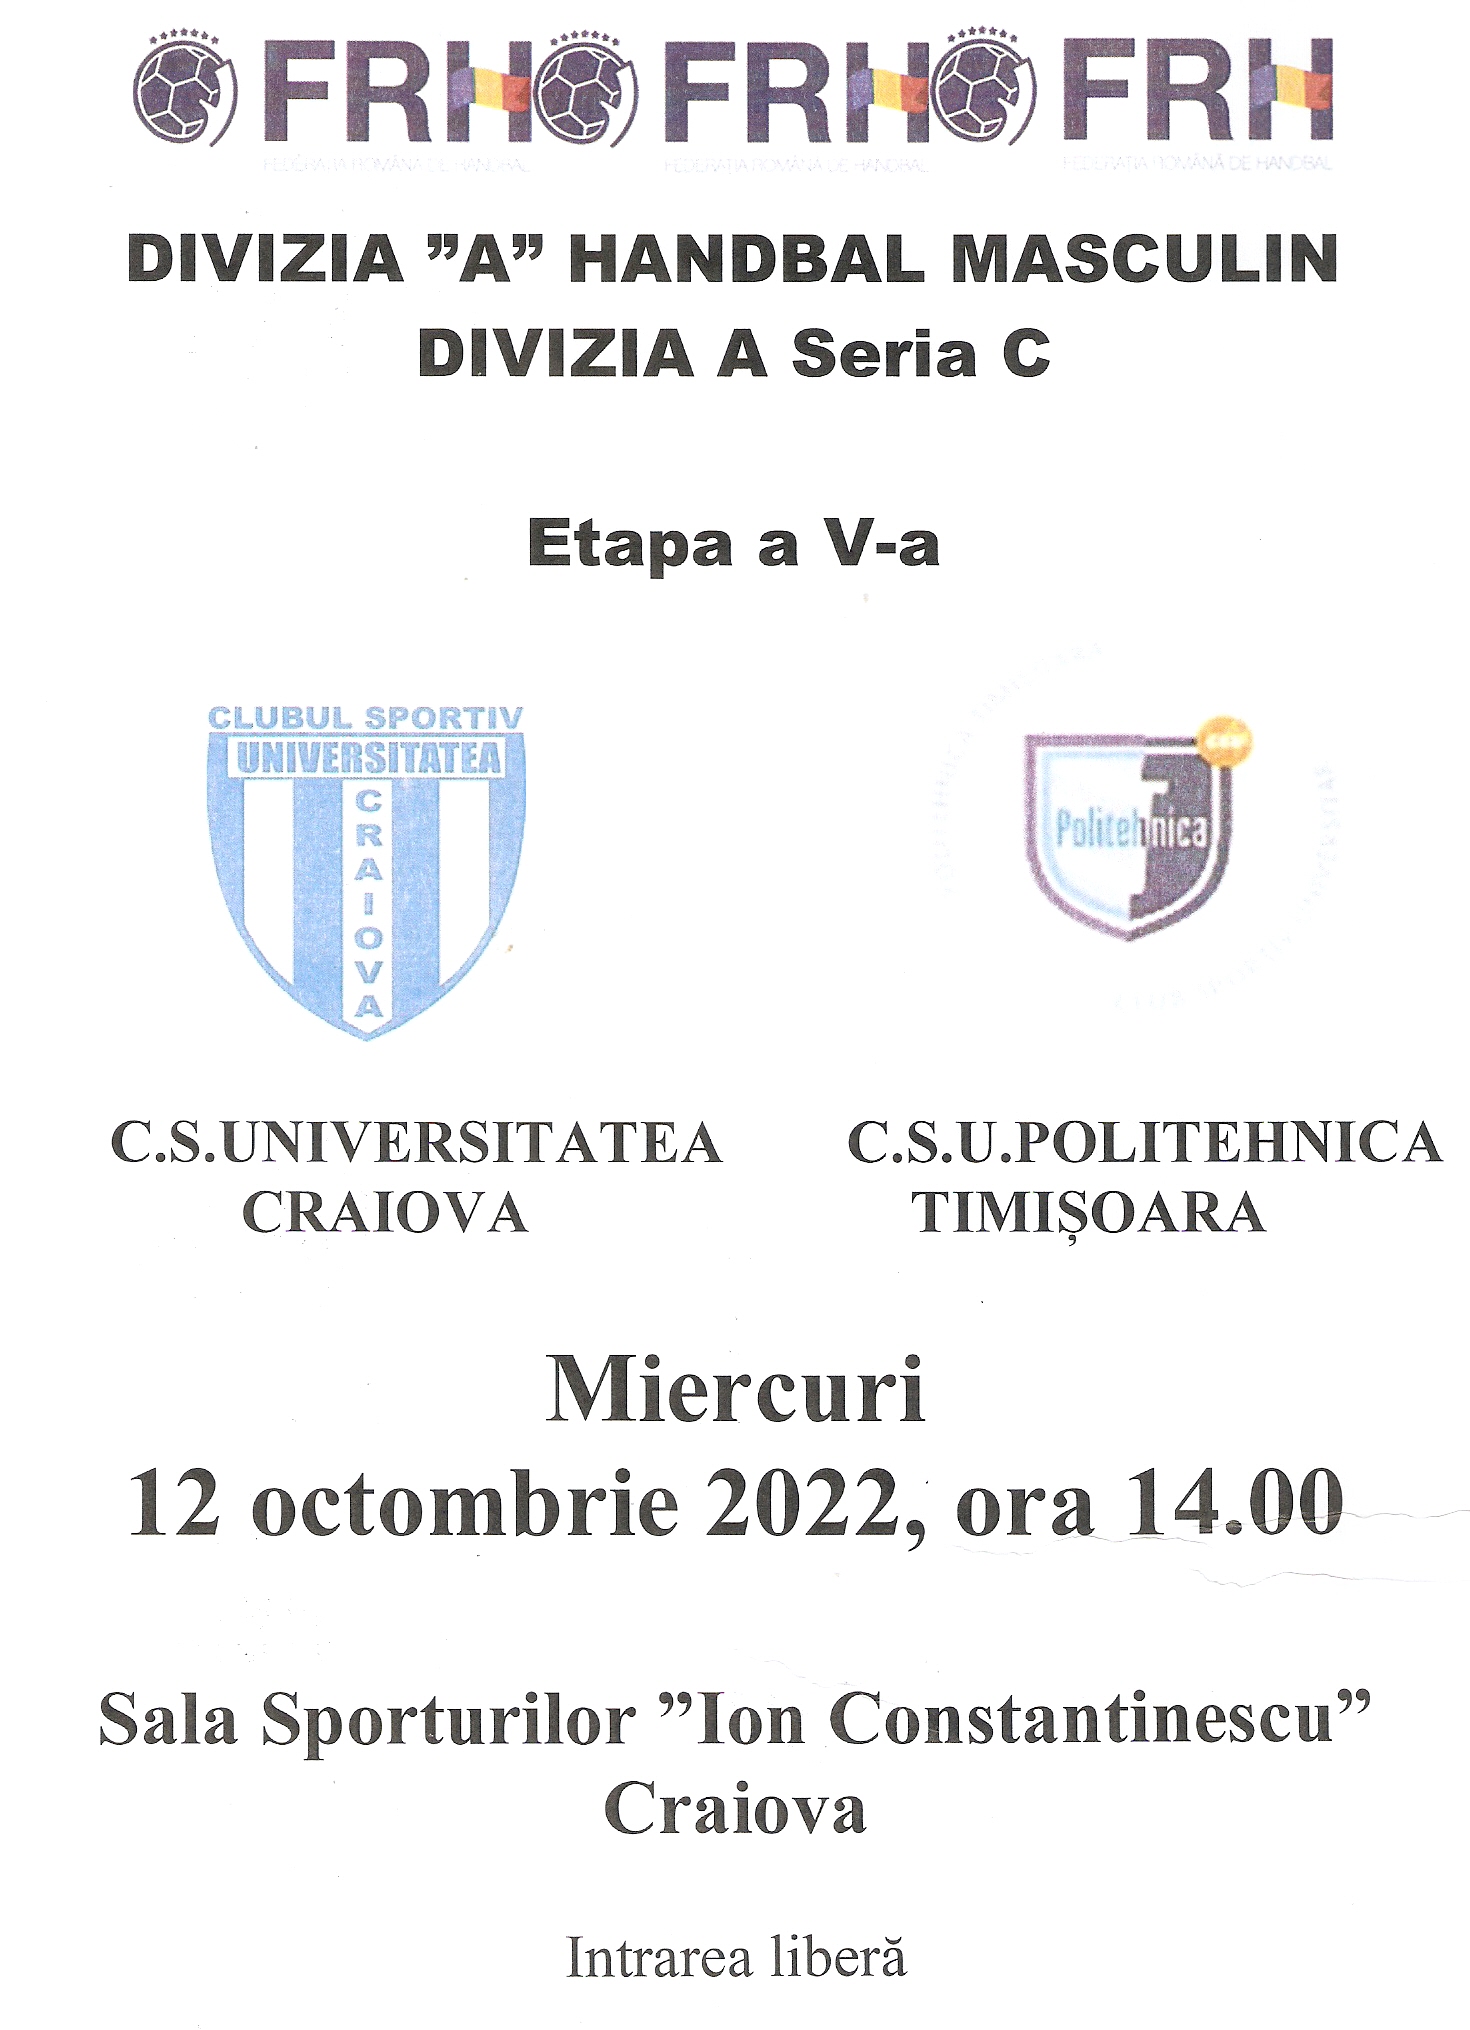 Handbal masculin  Etapa a V-a Divizia A seria C  Miercuri 12 octombrie 2022,ora 14.00